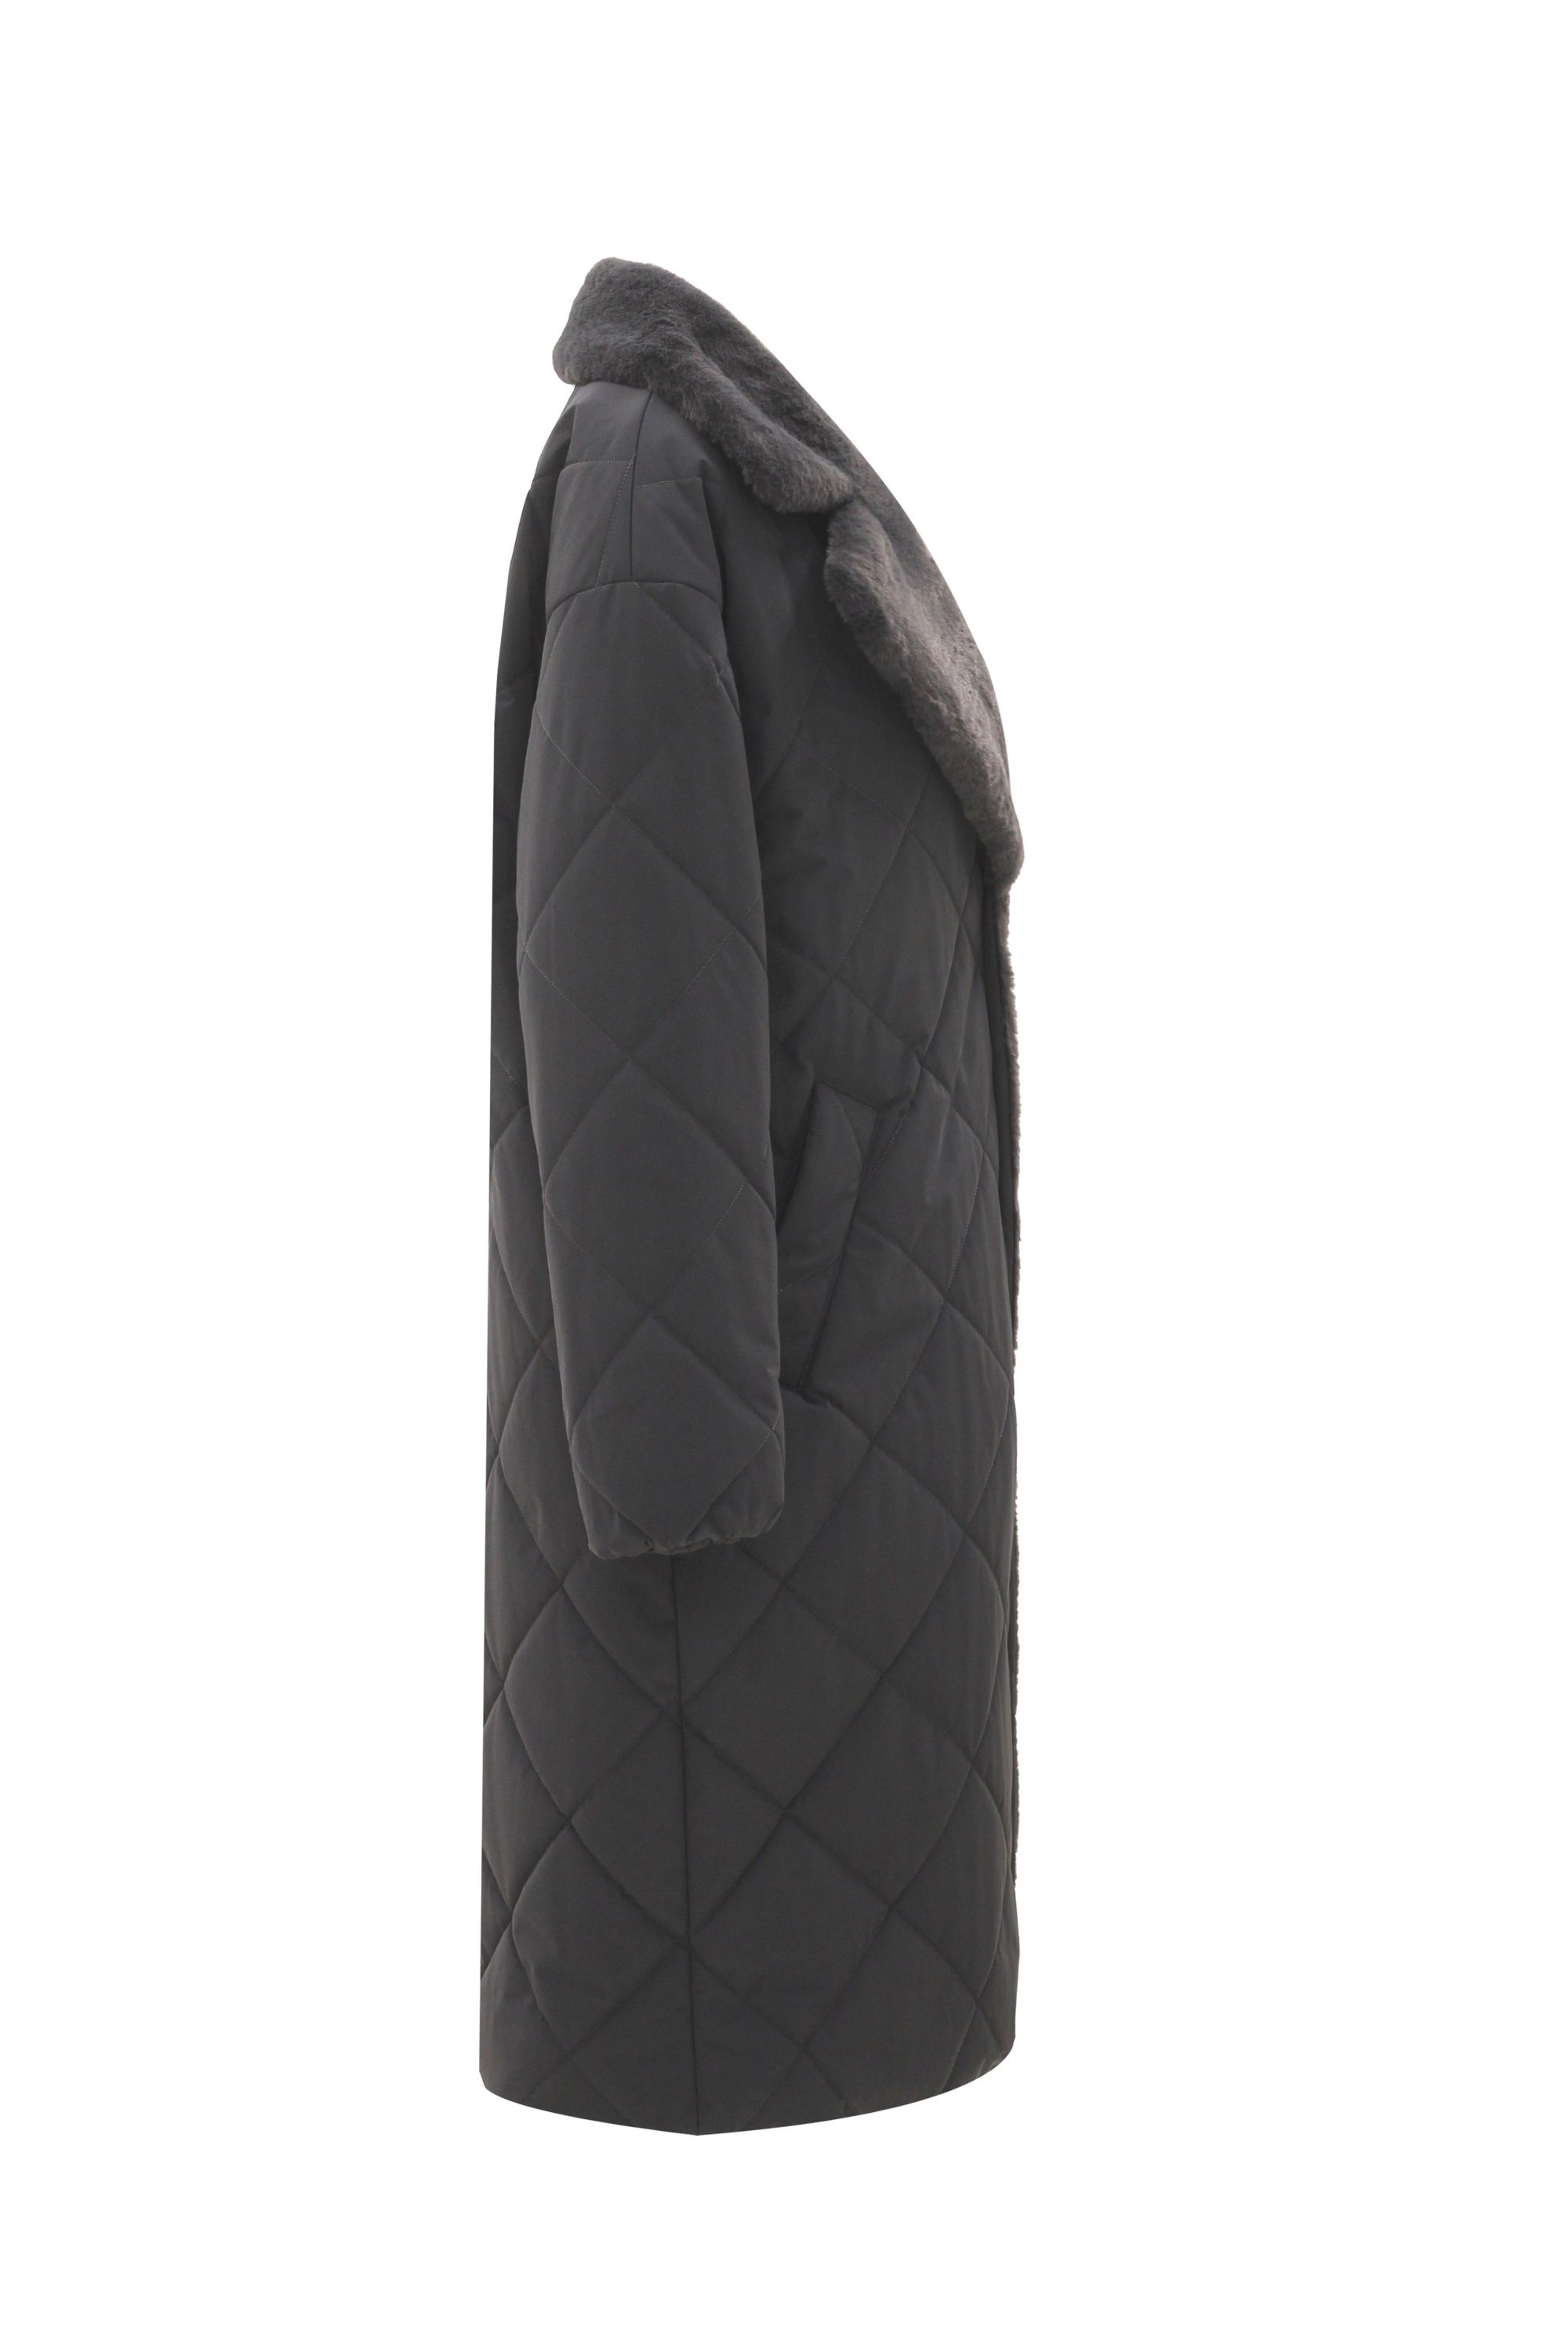 Пальто женское плащевое утепленное 5-12194-1. Фото 2.